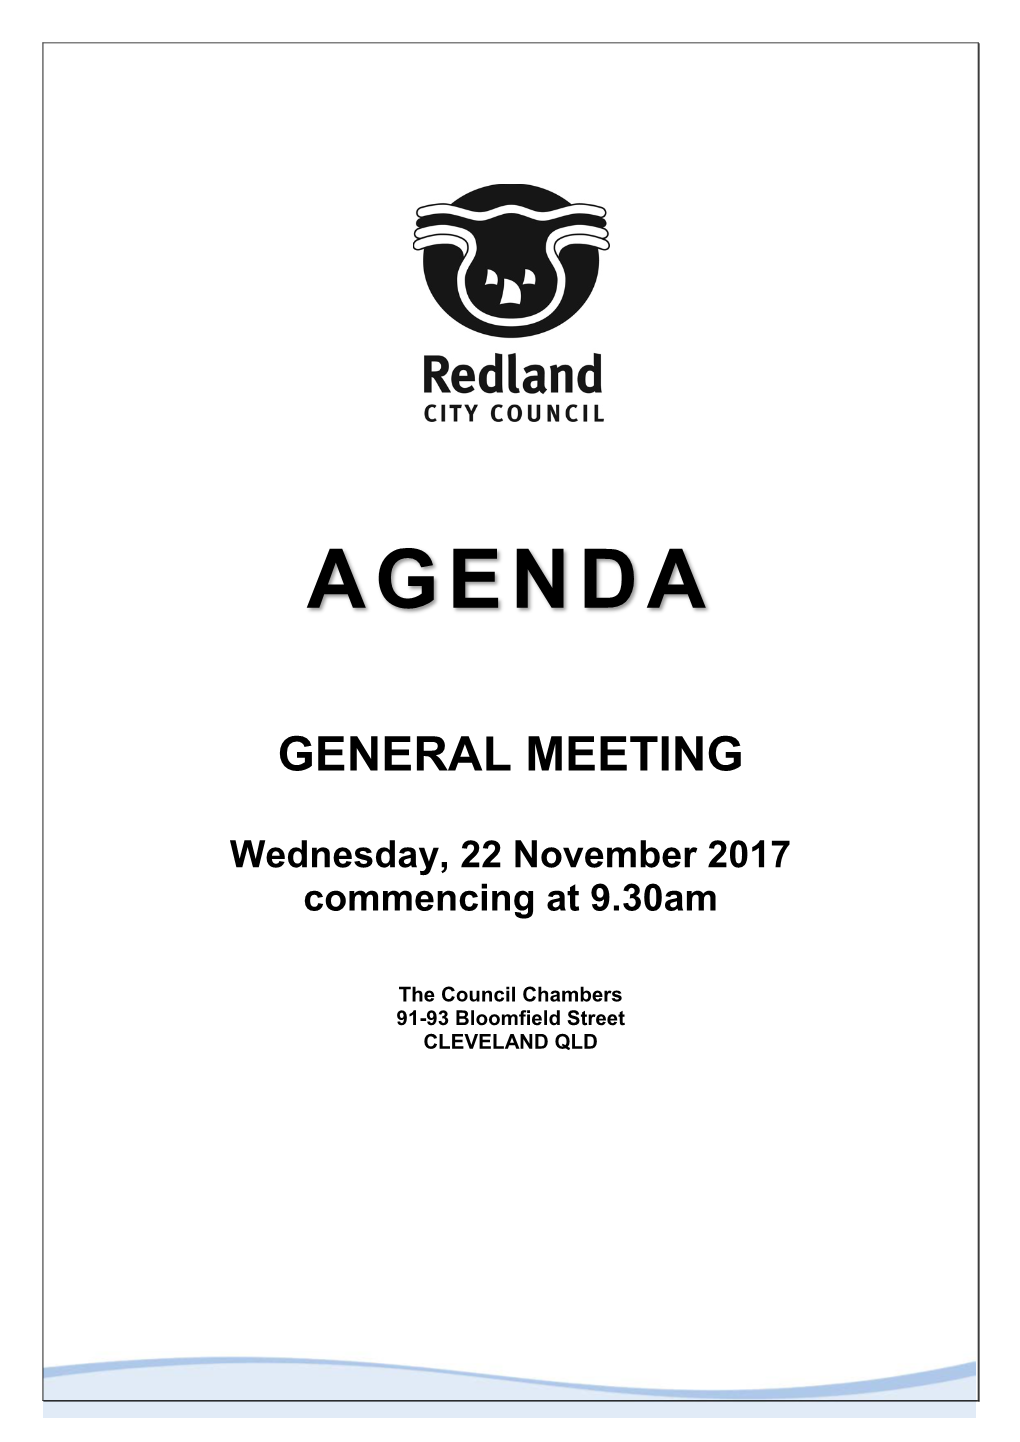 GENERAL MEETING AGENDA 22 November 2017